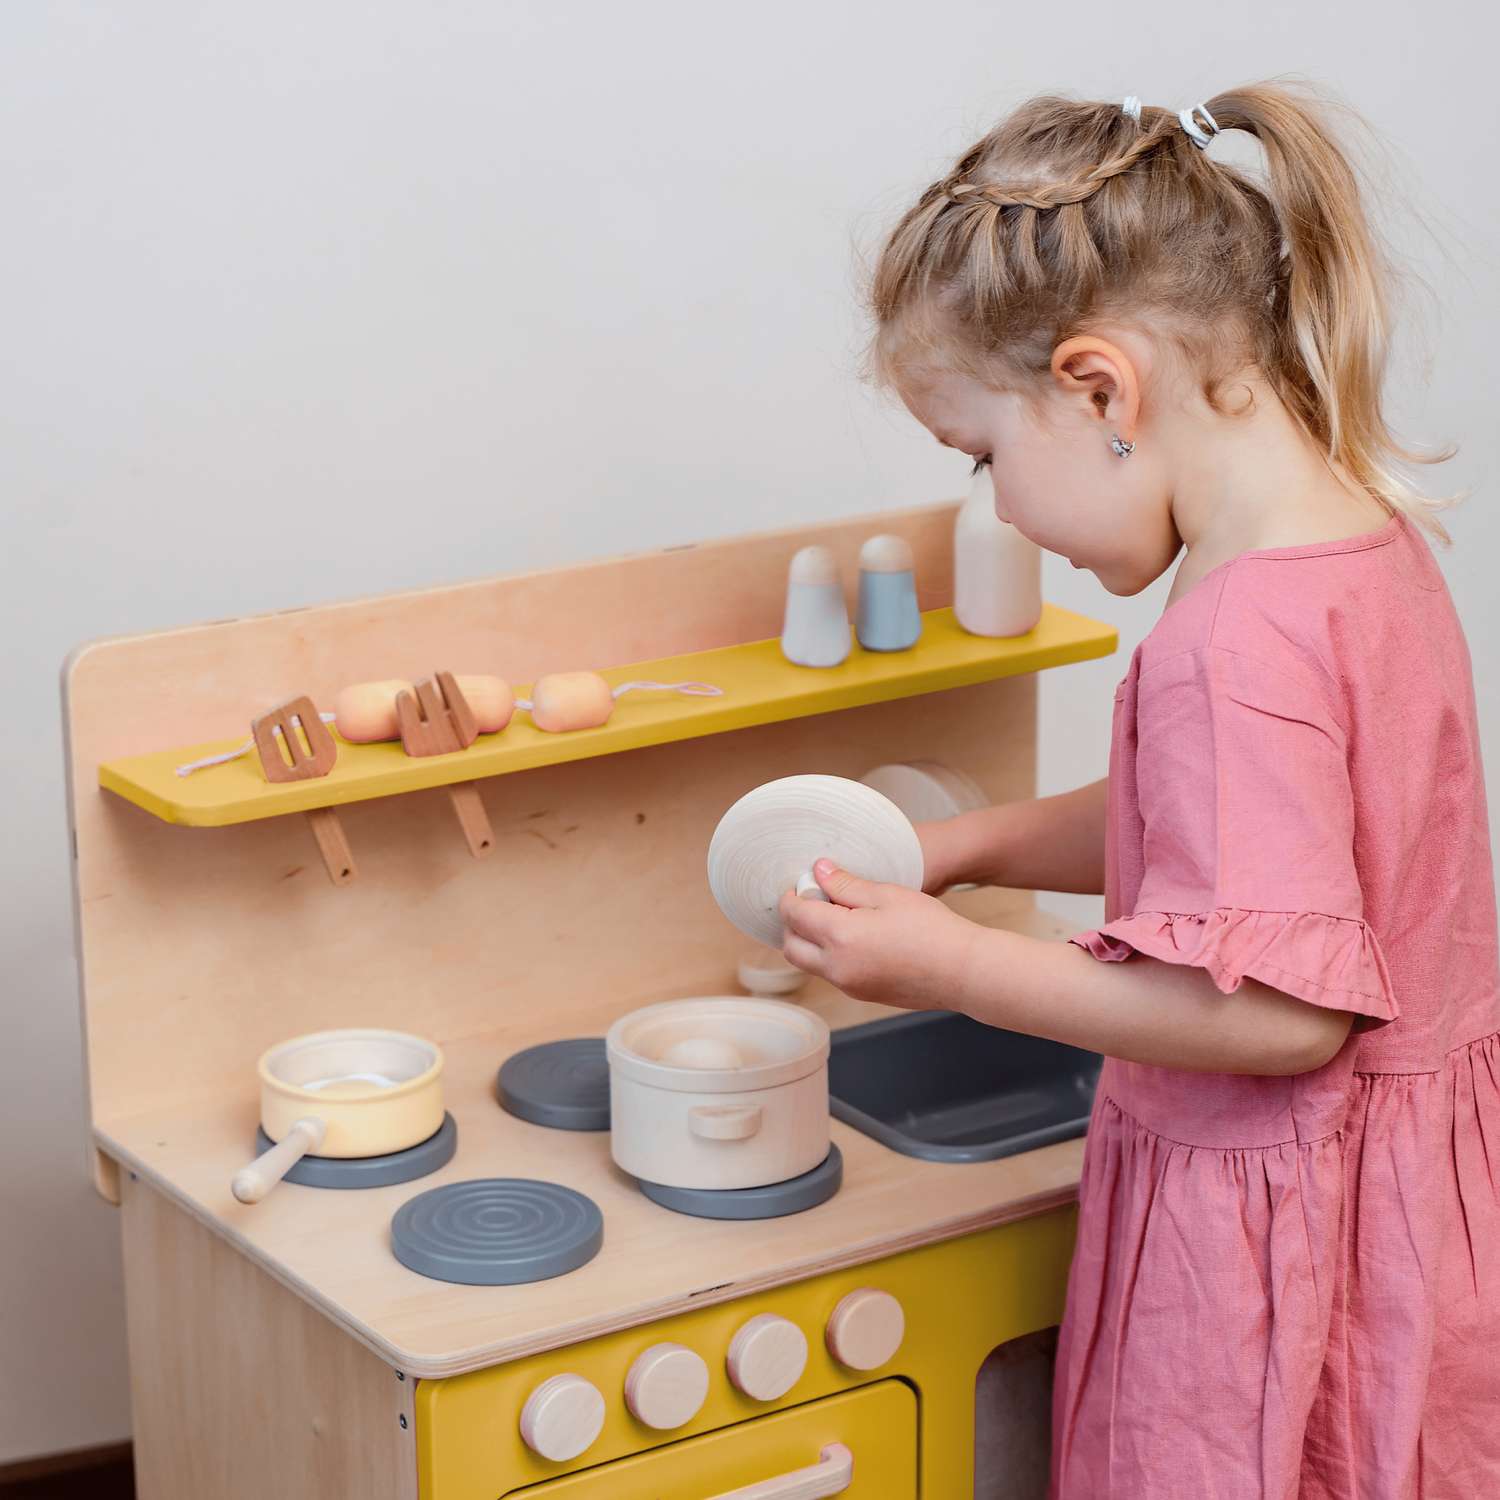 Кухня детская деревянная tioTeo детям Medium - фото 9